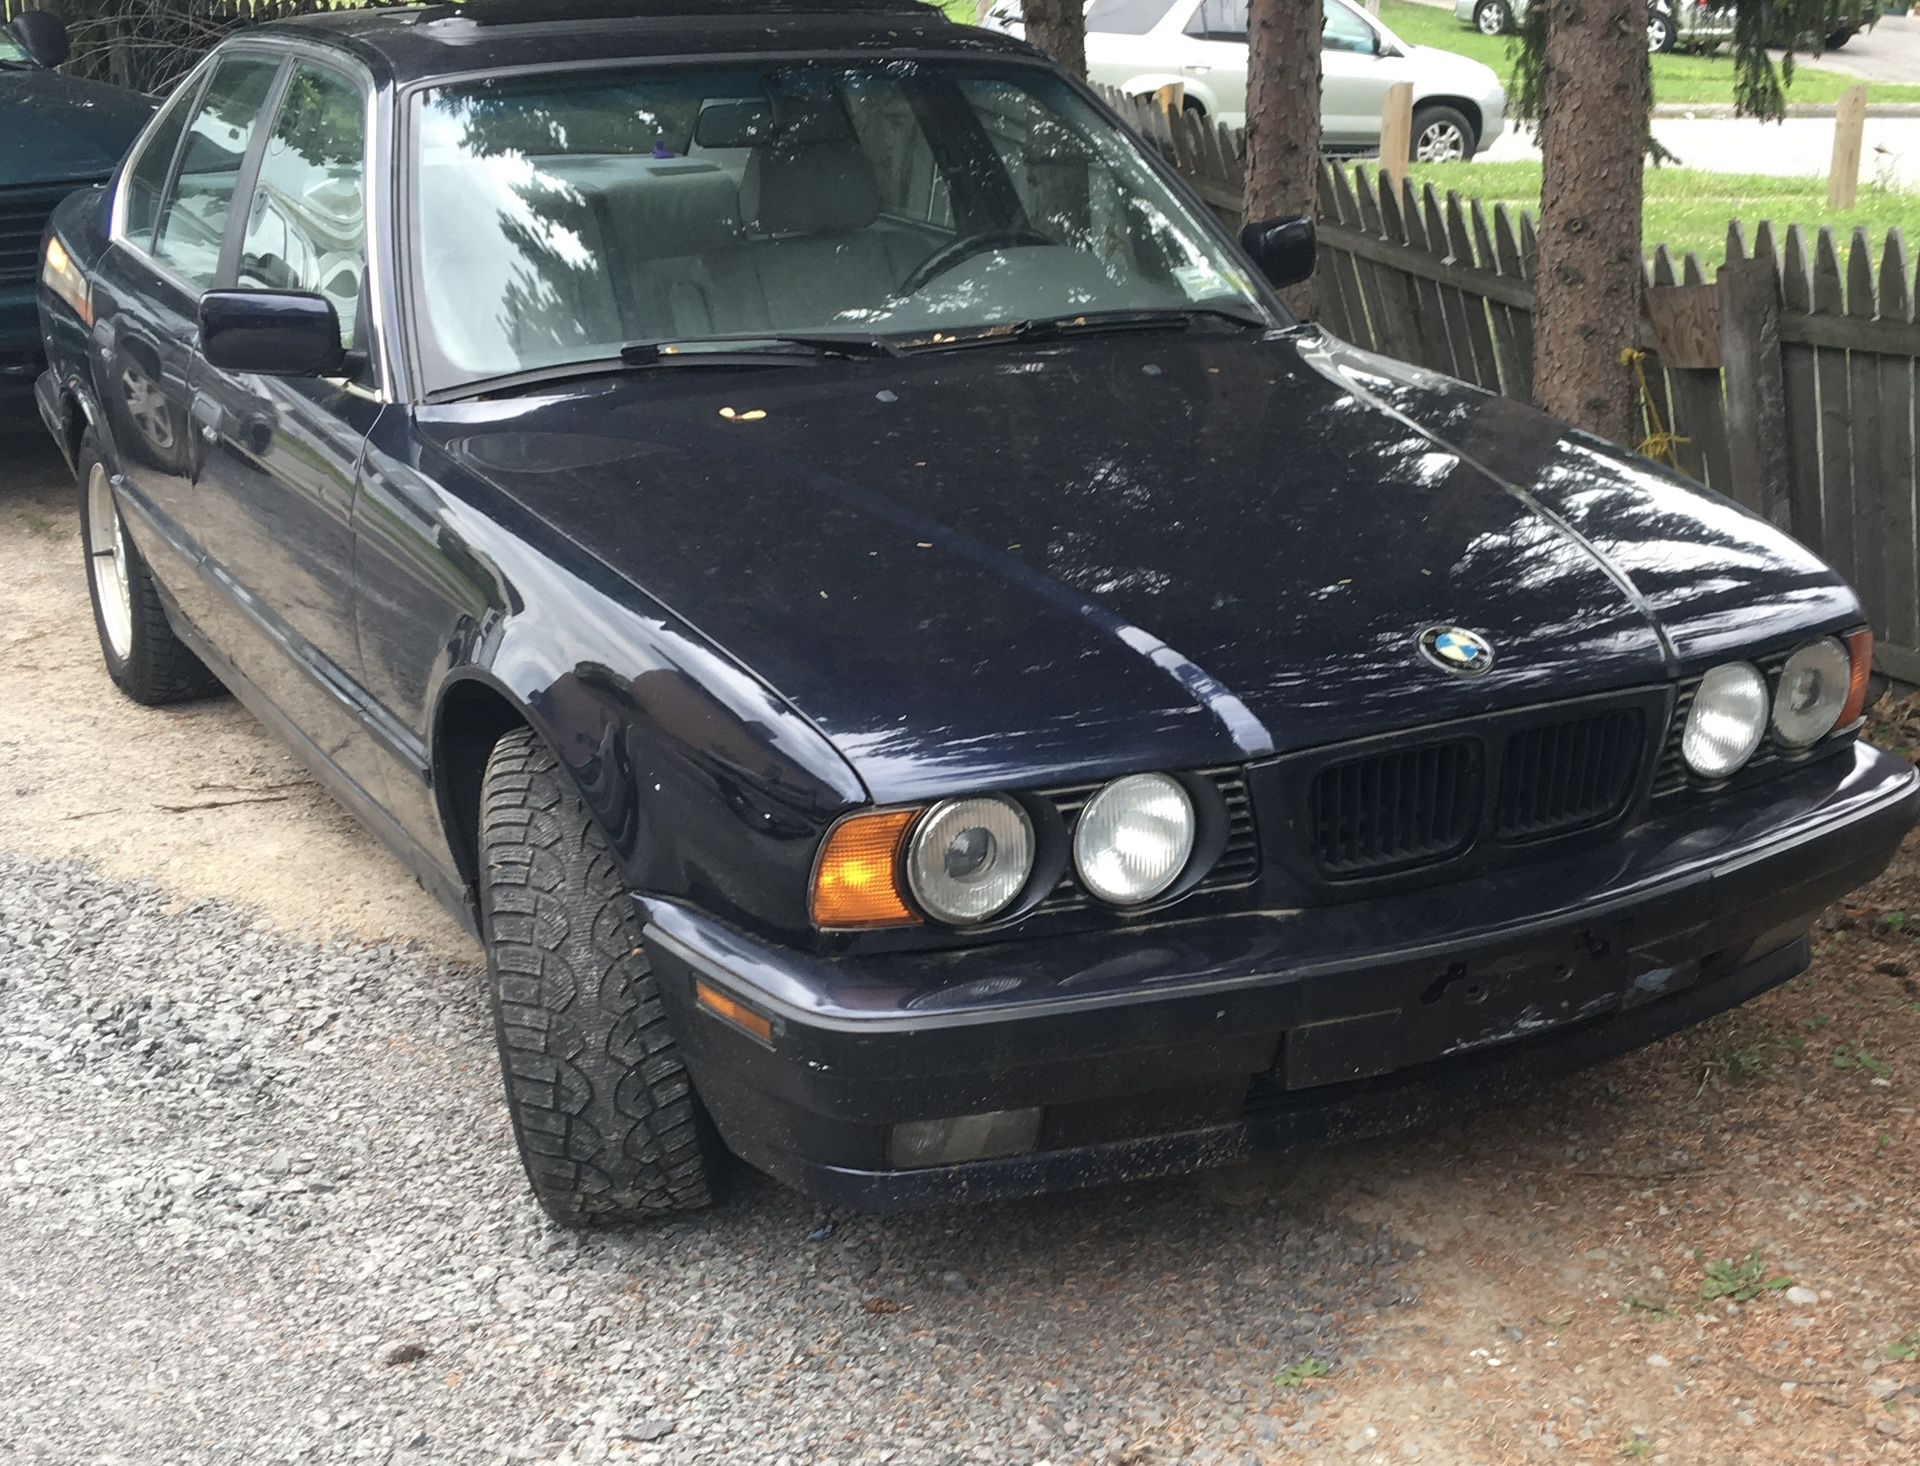 1994 BMW 540i